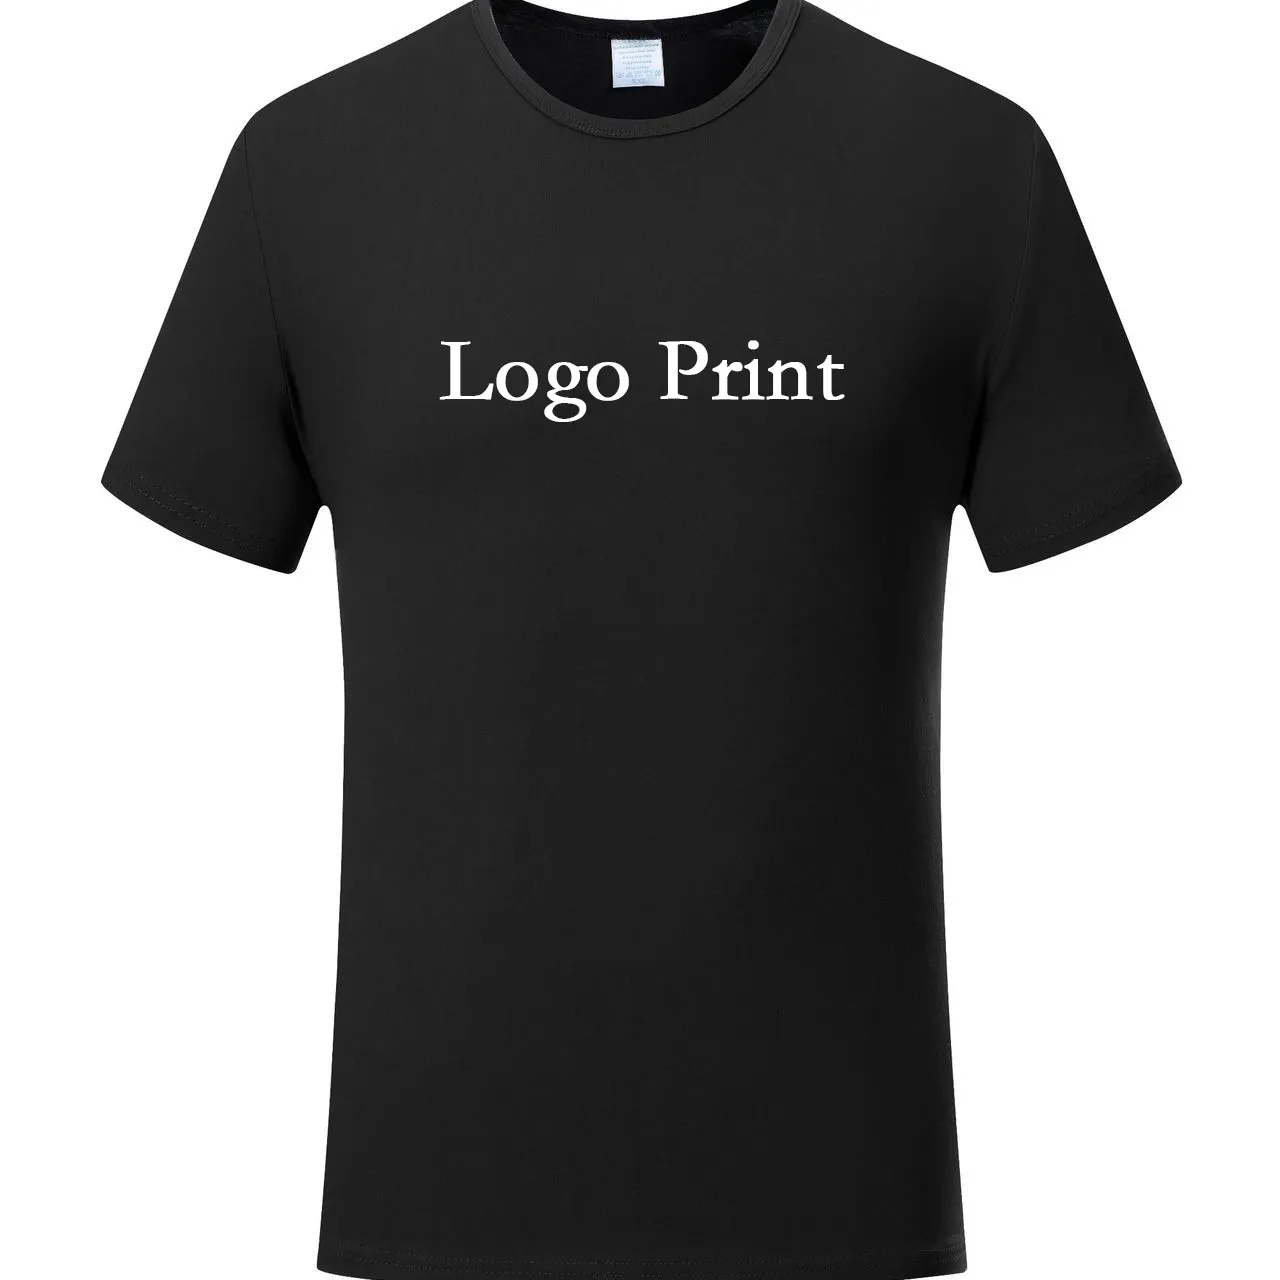 사용자 정의 7xl 남성 플러스 사이즈 티셔츠 빈 모달 패브릭 T 셔츠 인쇄 T 셔츠 자신의 브랜드 하이 퀄리티 대형 티셔츠